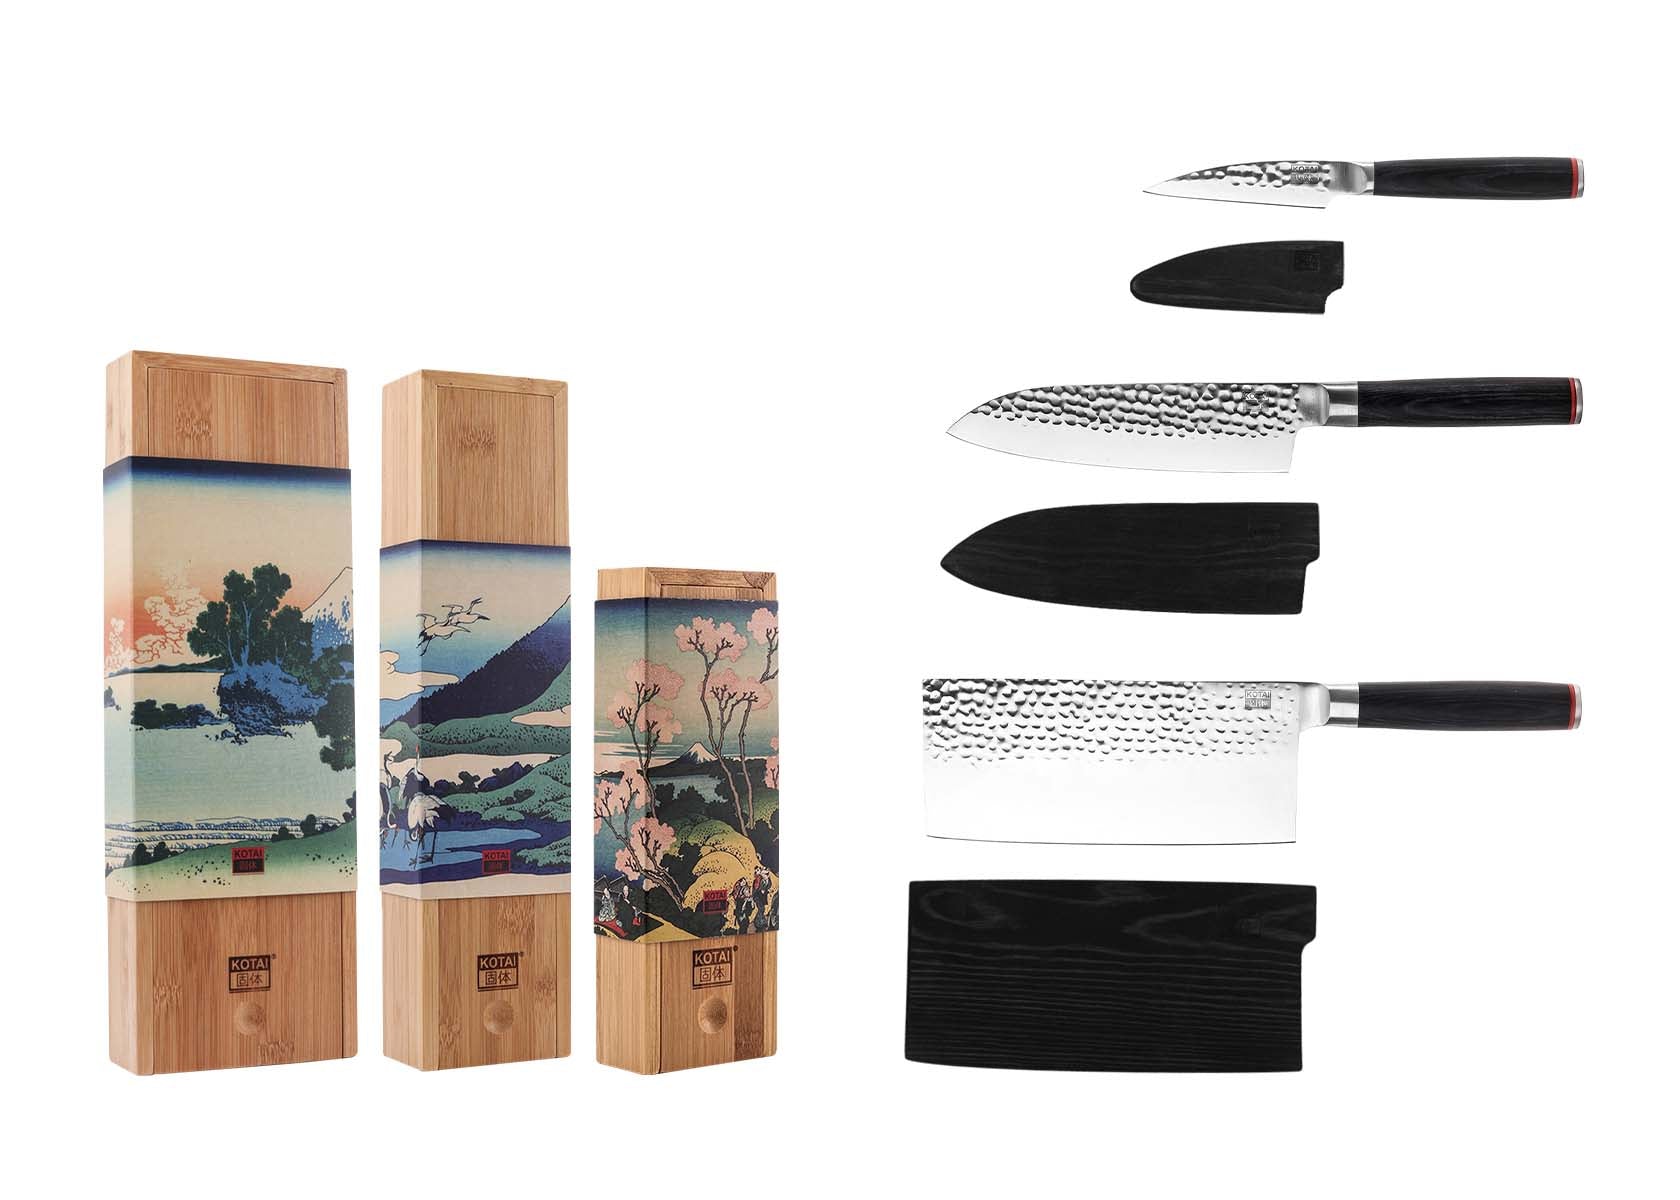 KOTAI Asian 3-Piece Knife Set - Pakka Collection